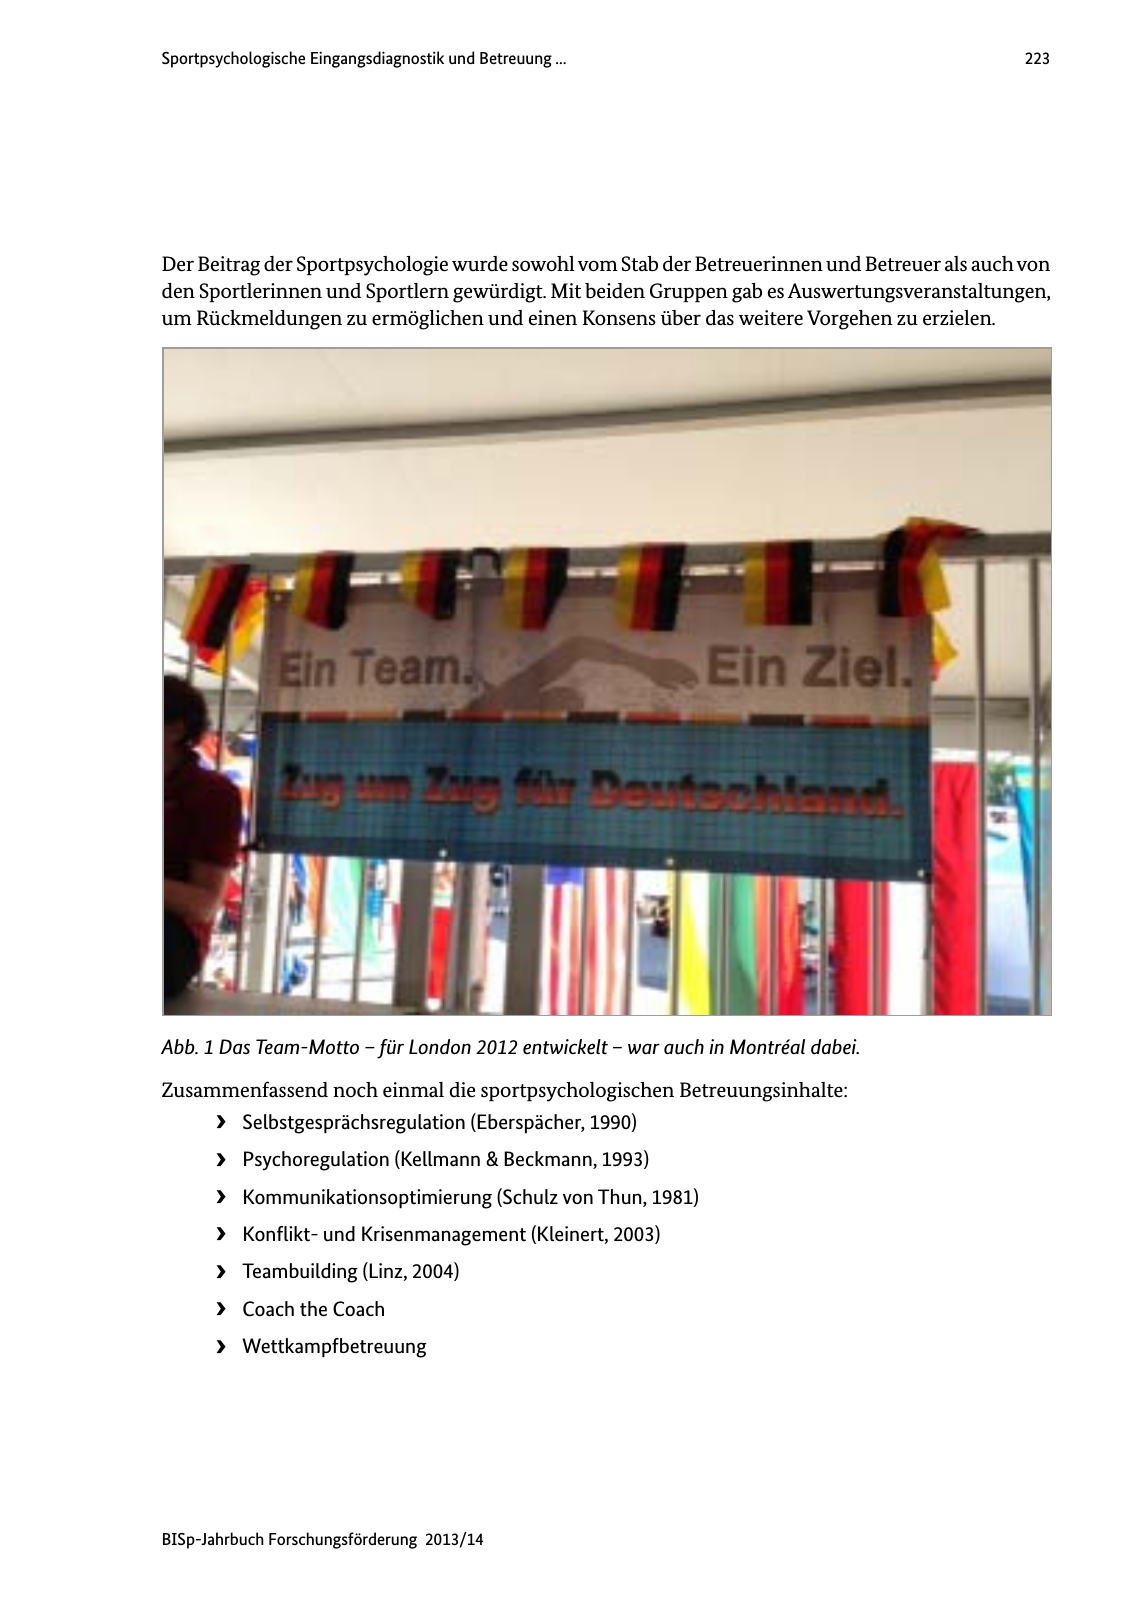 Vorschau BISp-Jahrbuch Forschungsförderung 2013/14 Seite 224